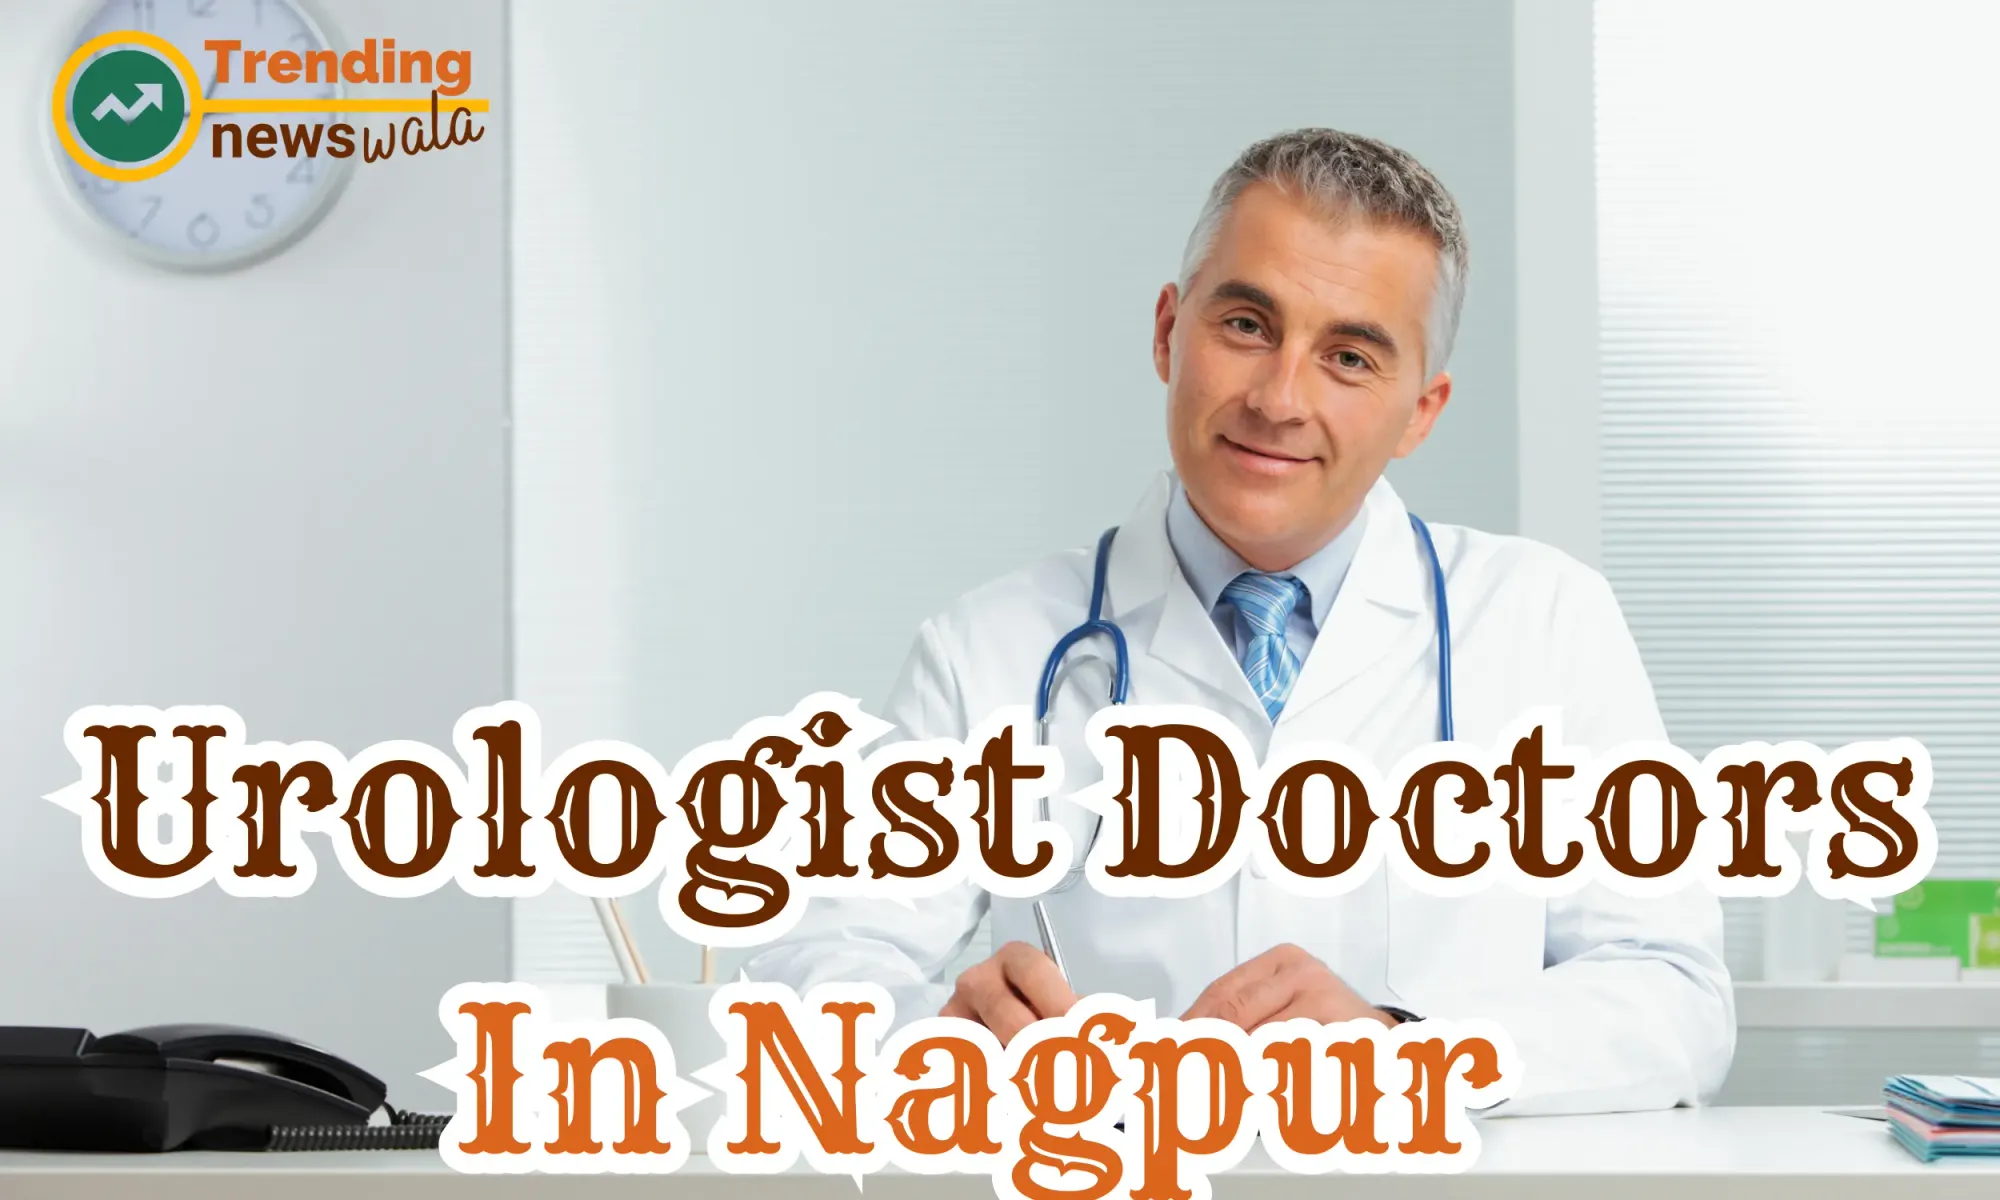 Best Urologist Doctors In Nagpur